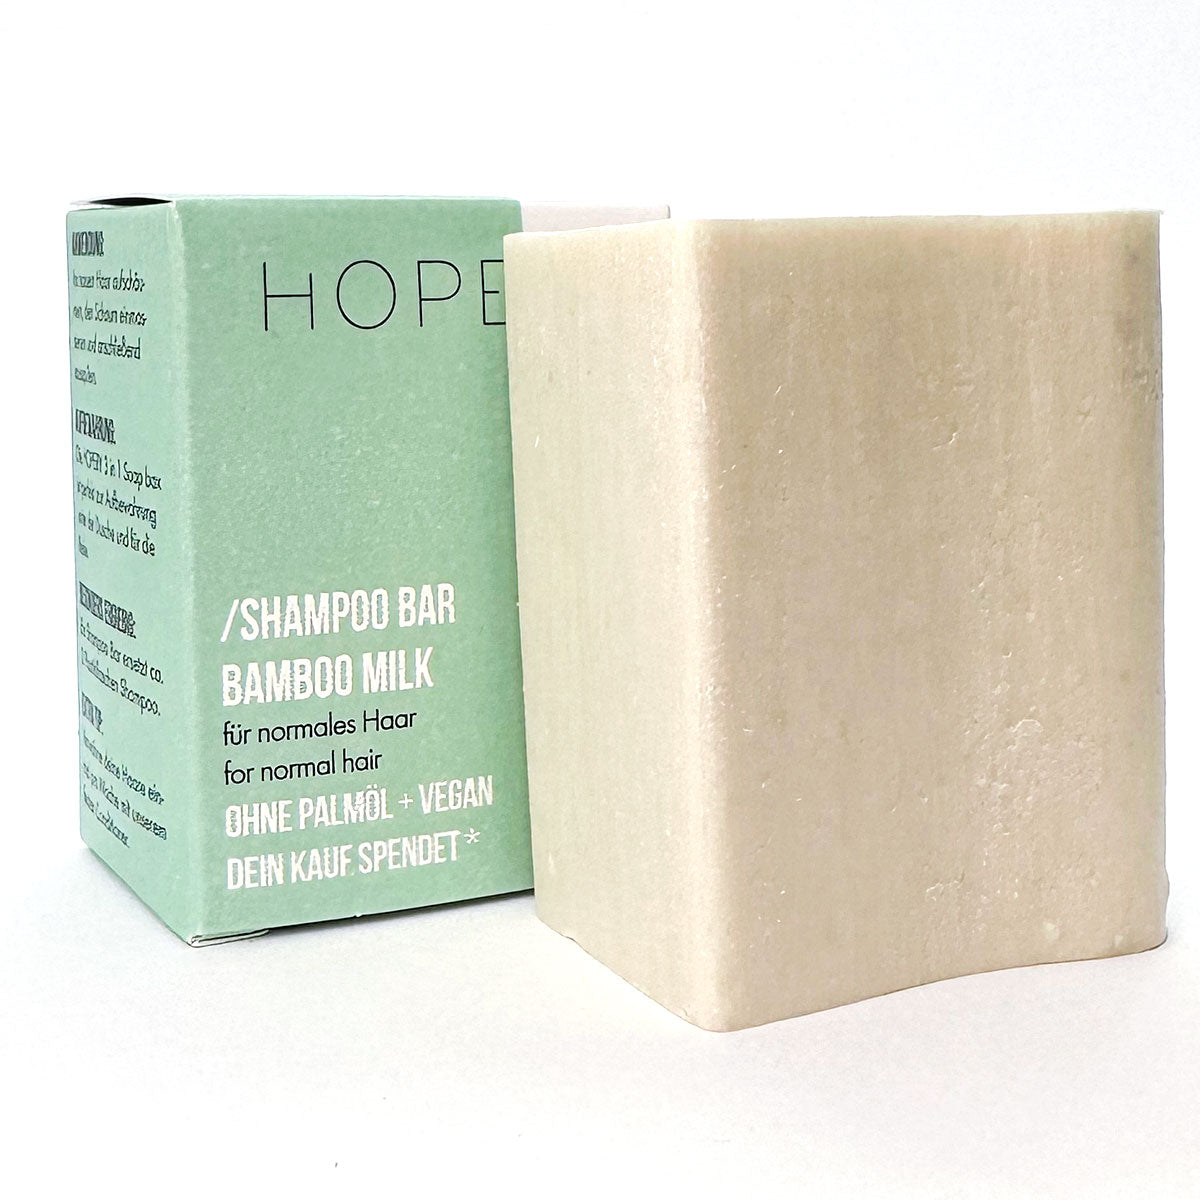 Shampoo "Bamboo Milk" – 95g